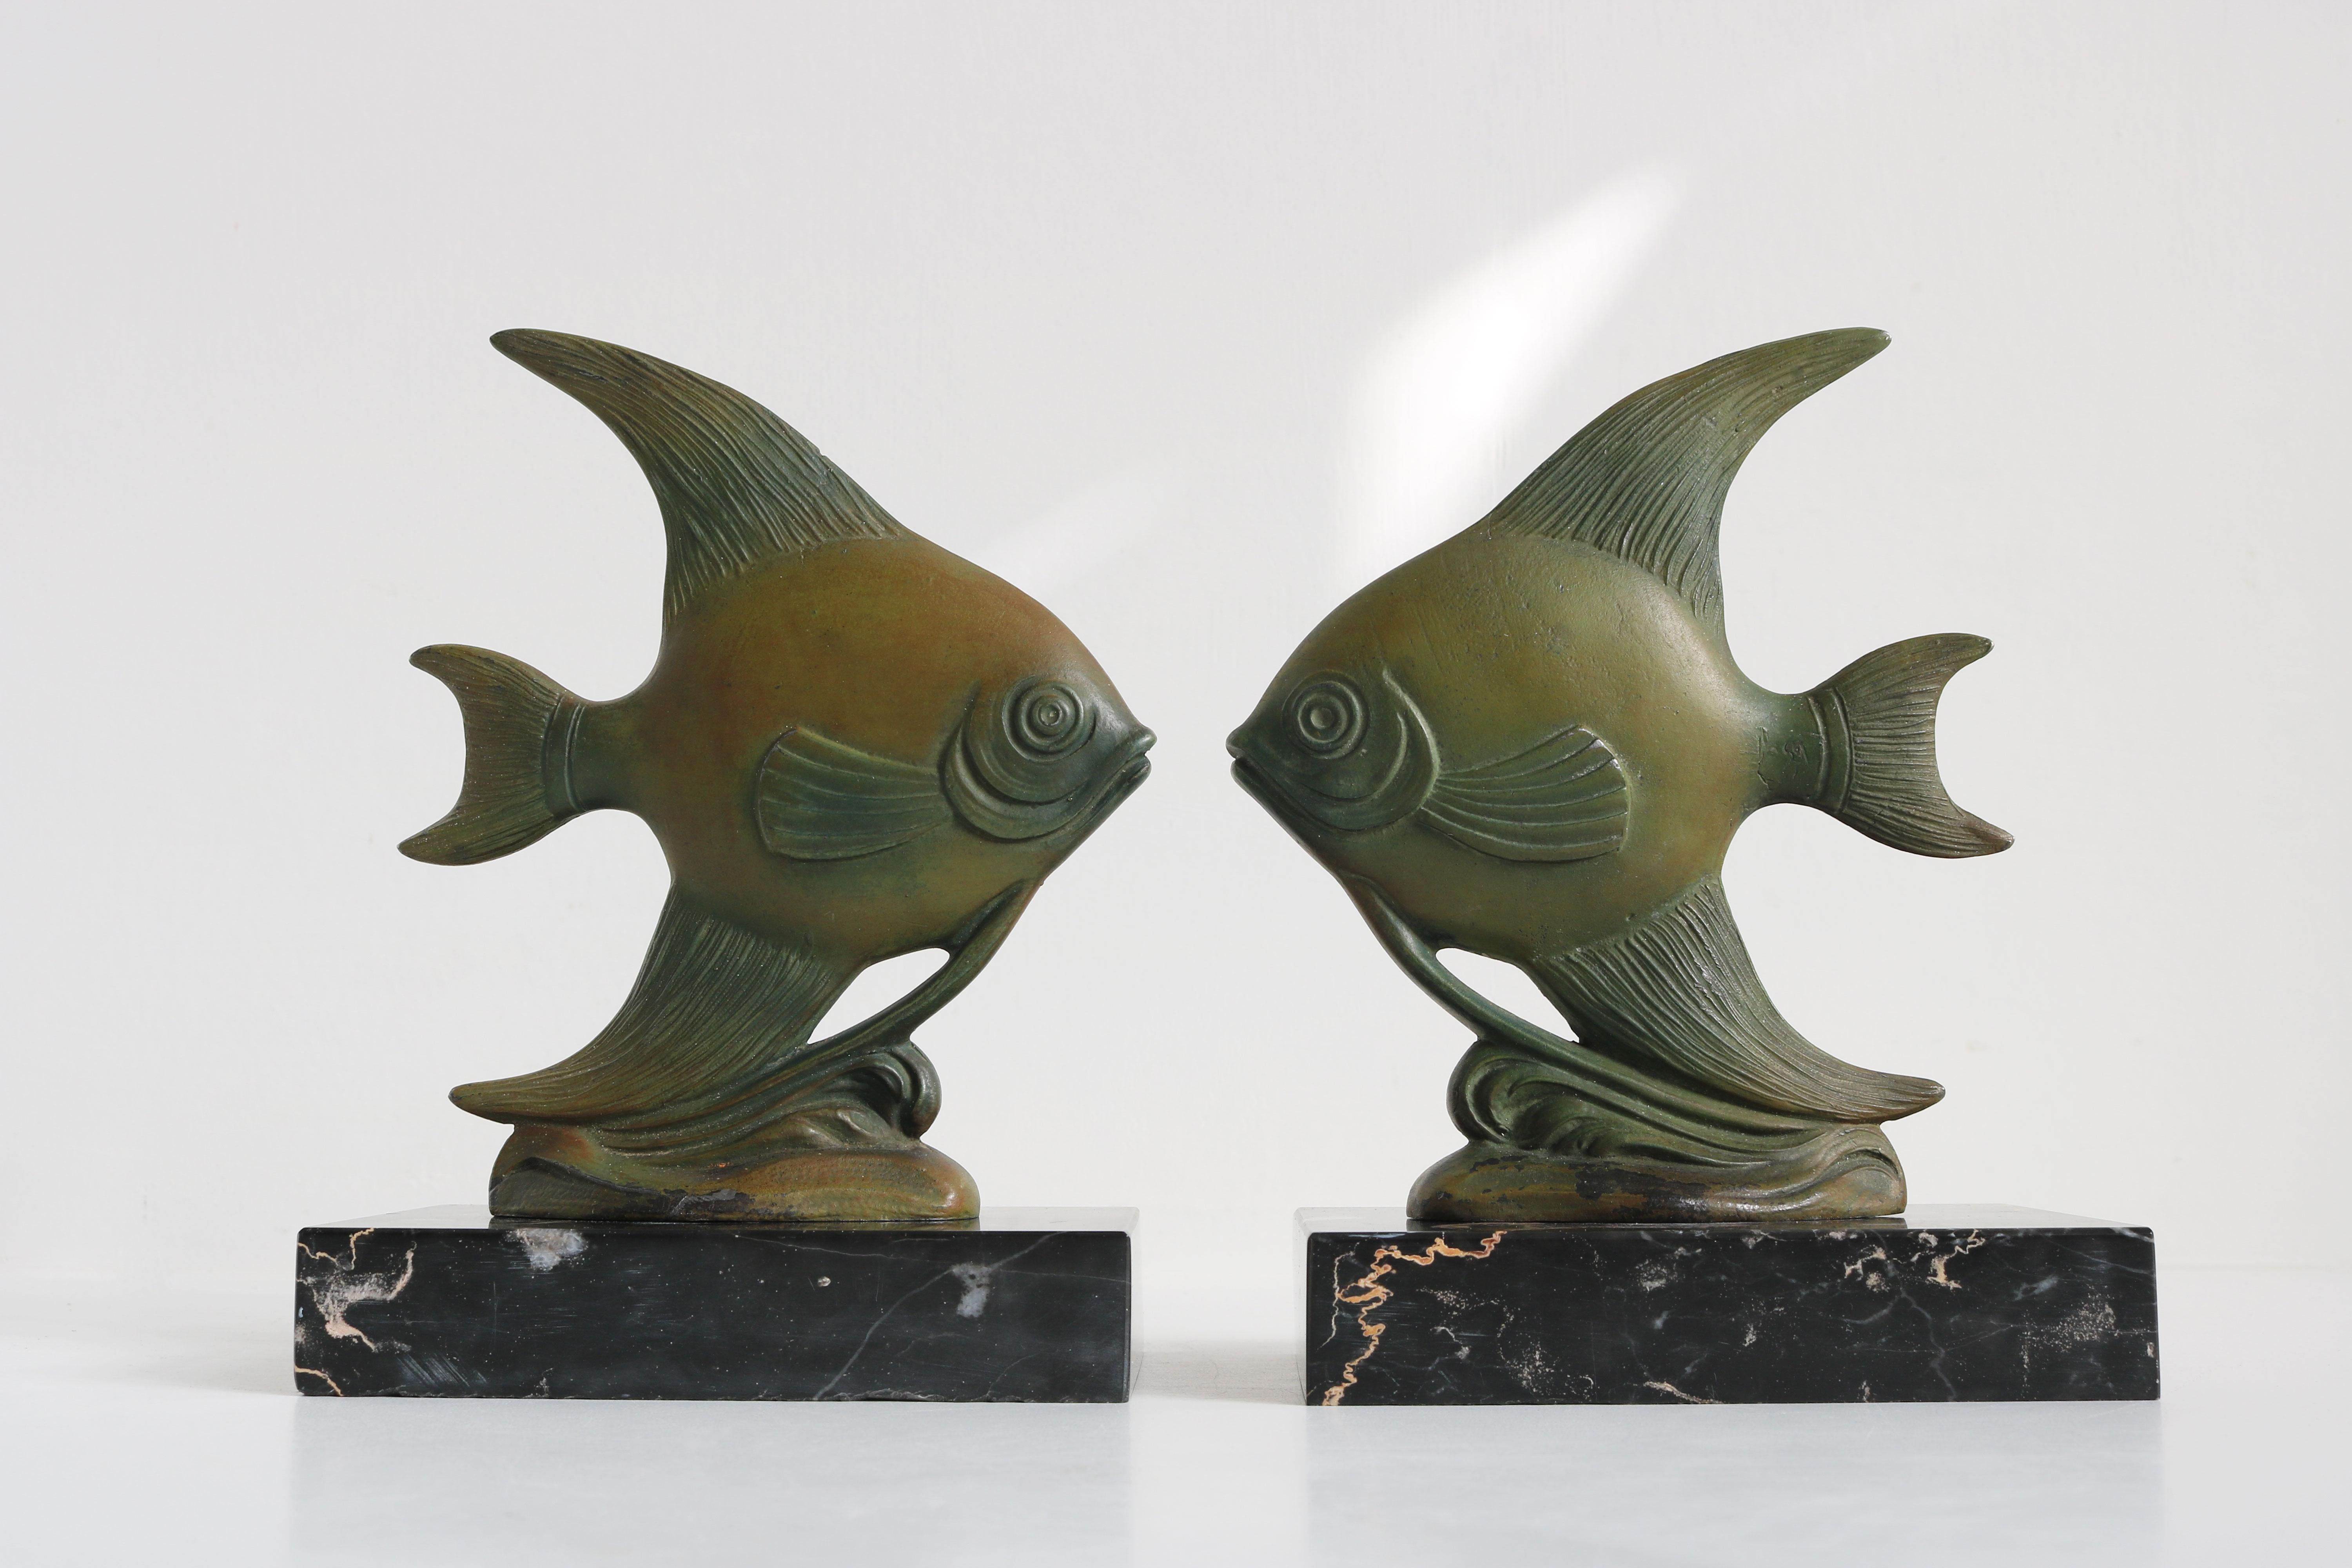 Stilvoll und zeitlos! Diese französischen Art Deco Angelfish Buchstützen aus den 1930er Jahren. 
Wunderschönes Art-Déco-Design mit der richtigen Patina und dem richtigen Gefühl für sie. 
Die Engelsfische sind perfekt im Art-Déco-Stil gestaltet und